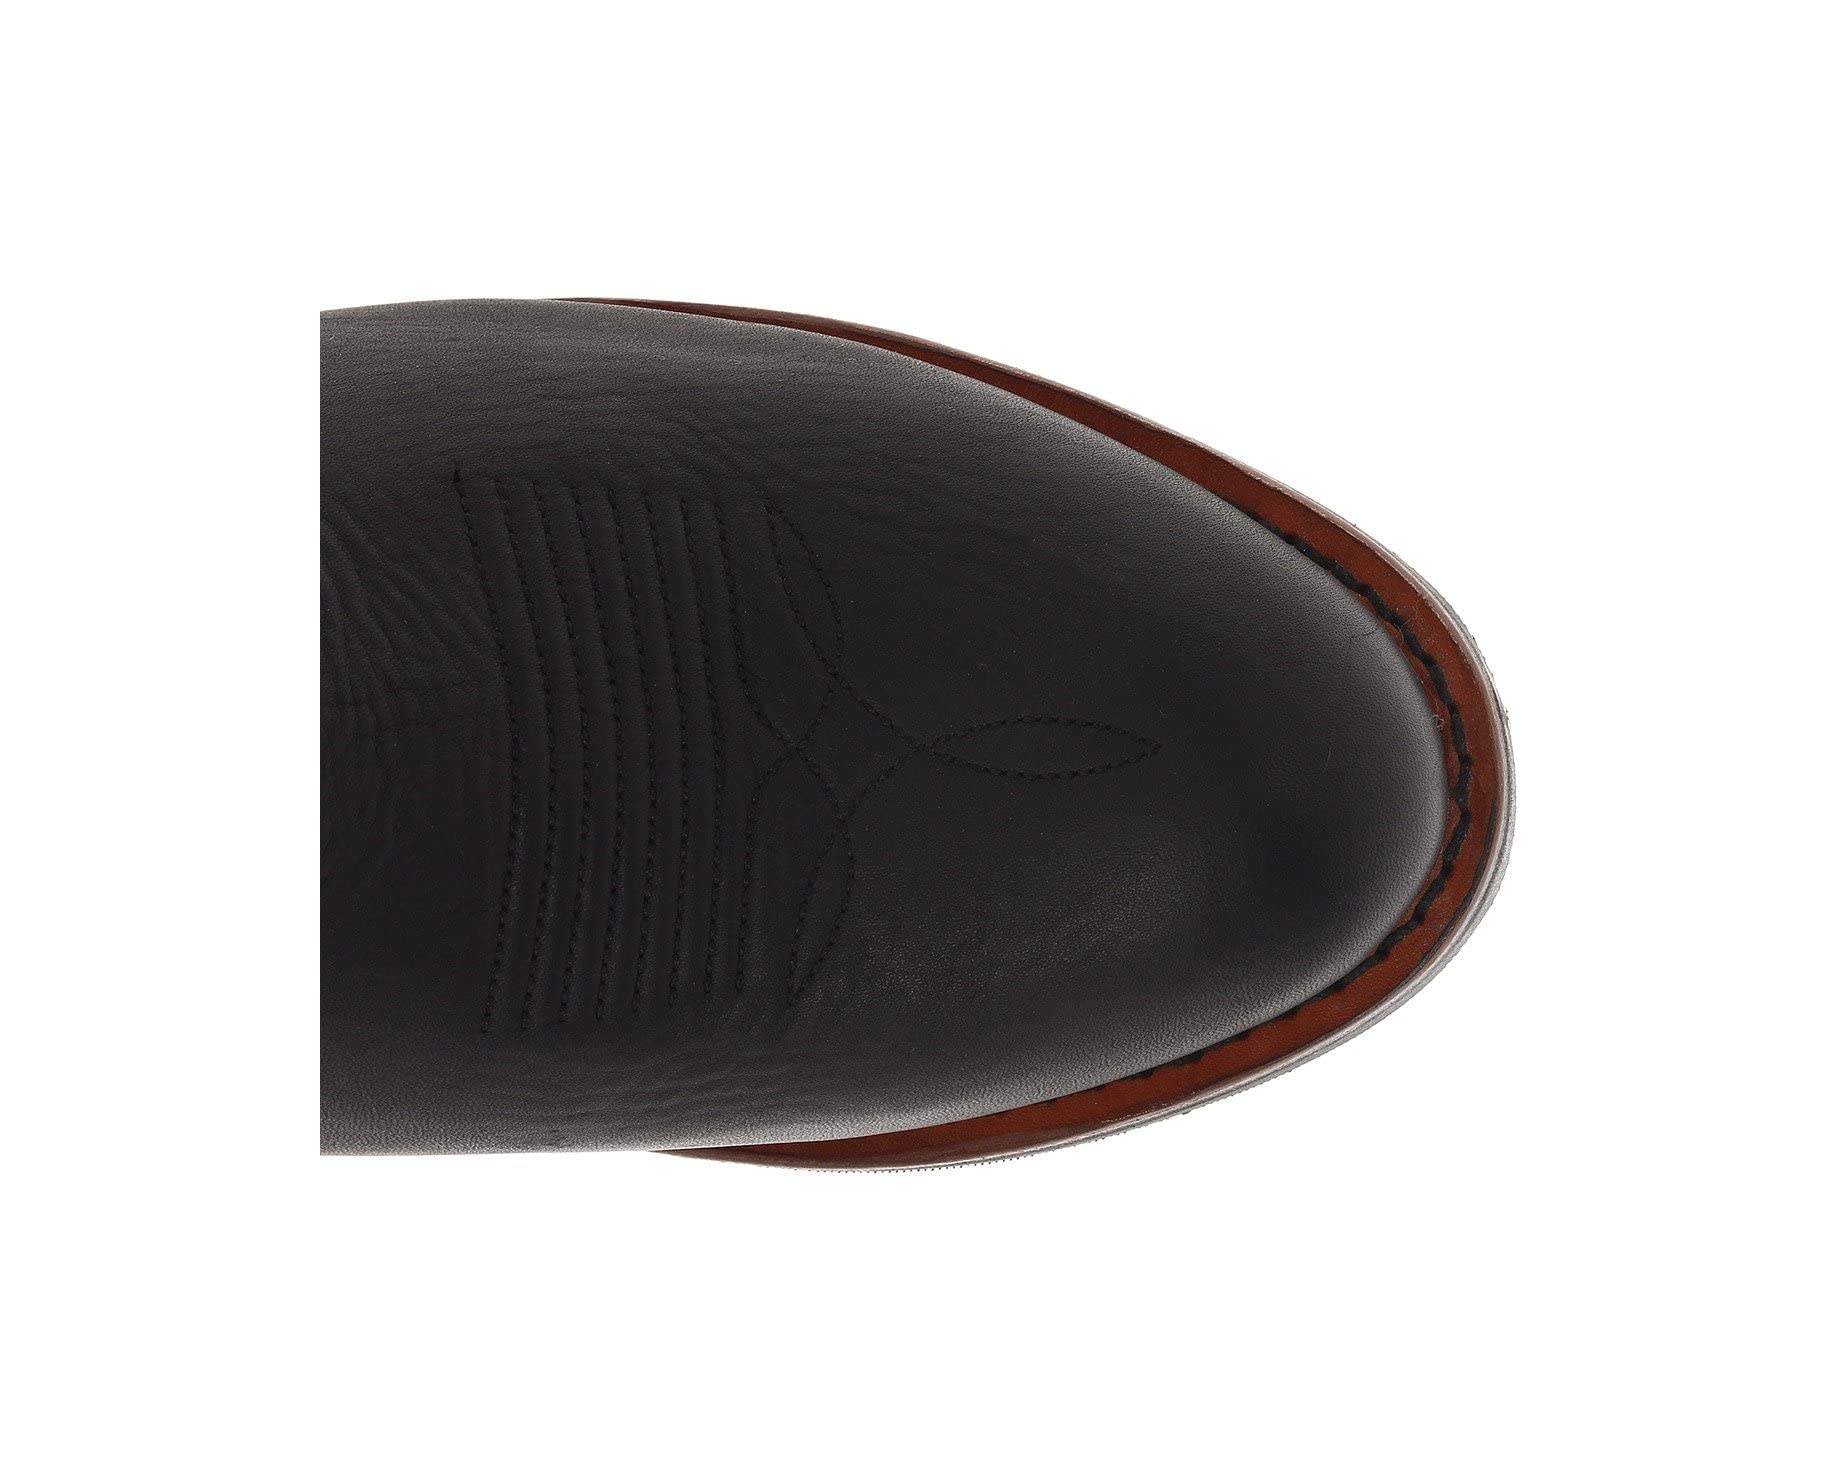 Ботинки Albuquerque Dan Post, черный ботинки dan post storms eye waterproof composite toe eh цвет brown orange